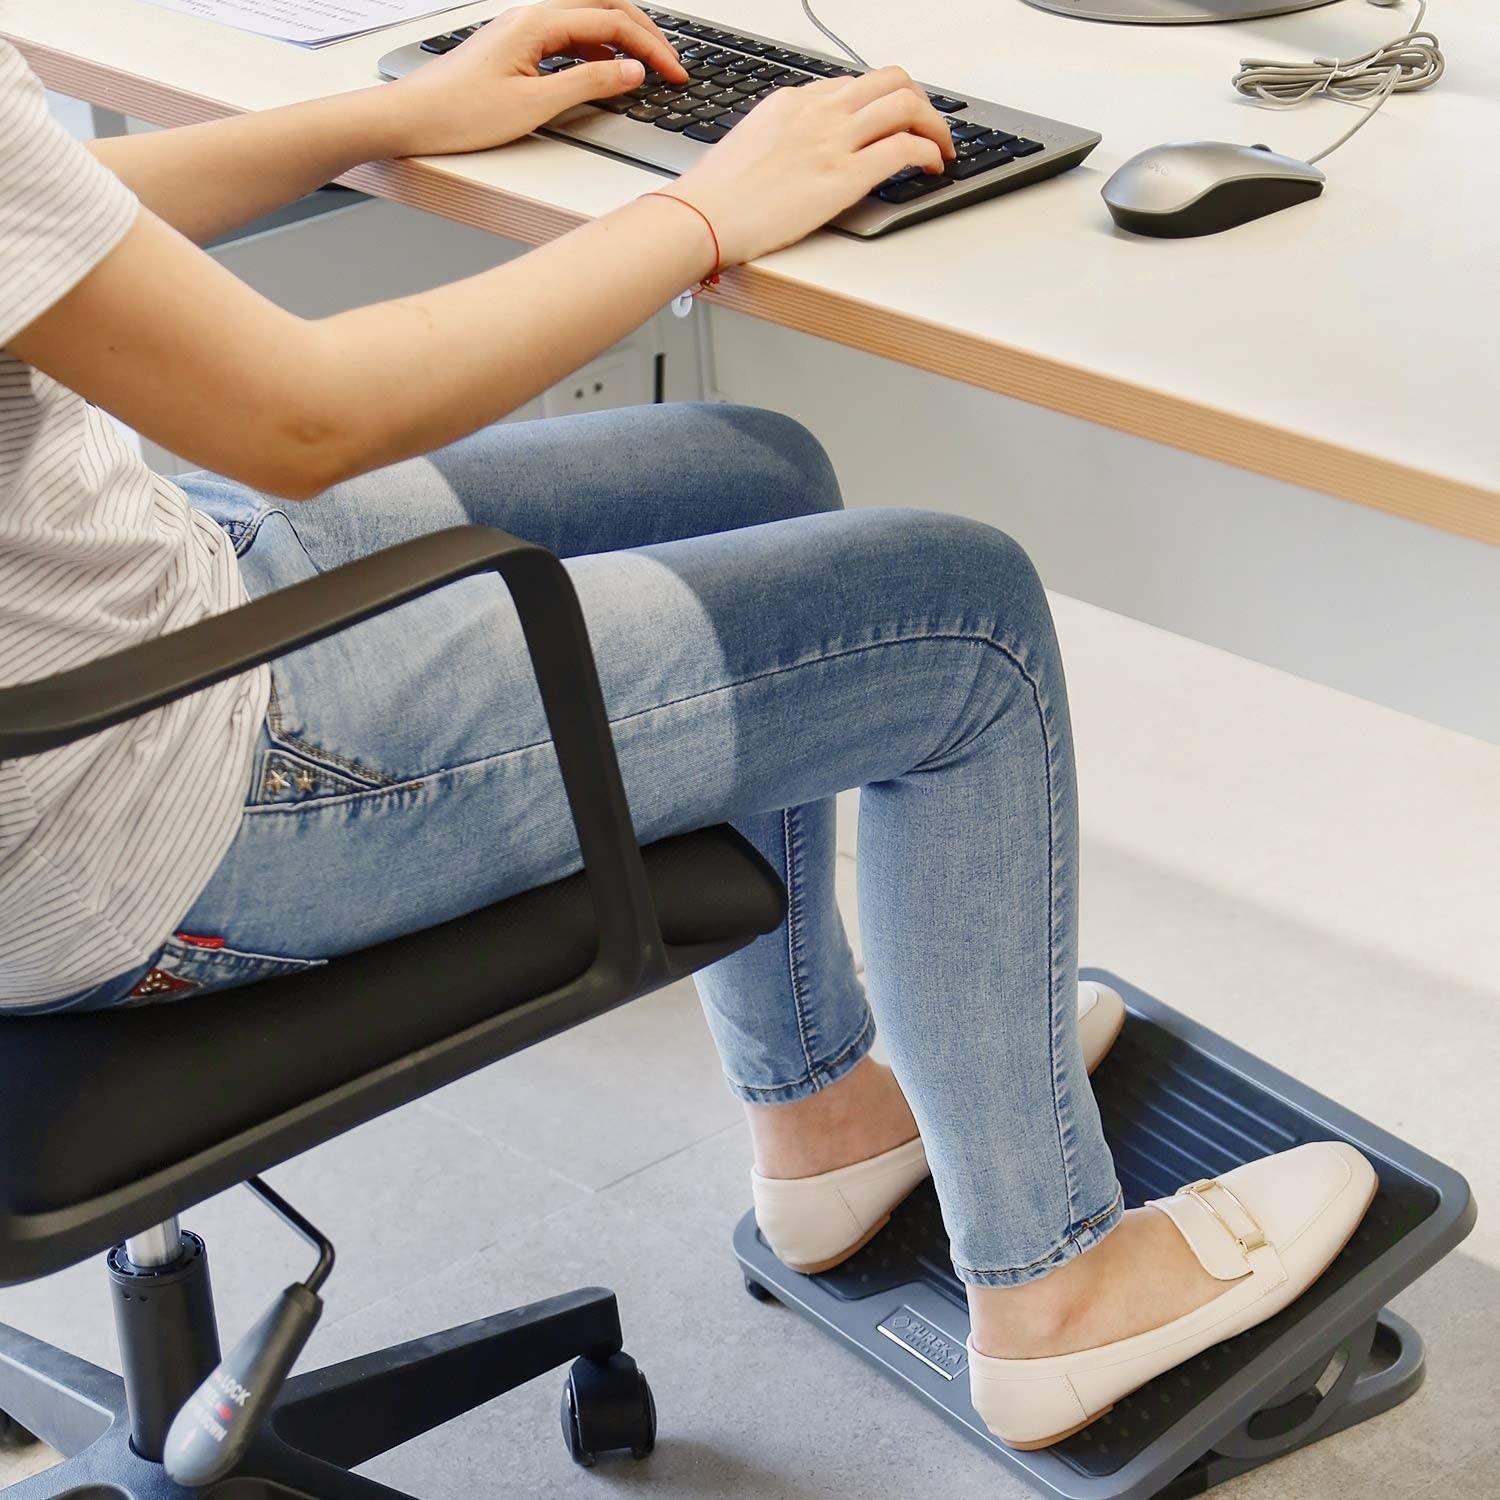 14 Under-The-Desk Foot Rests For Improved Posture 2022